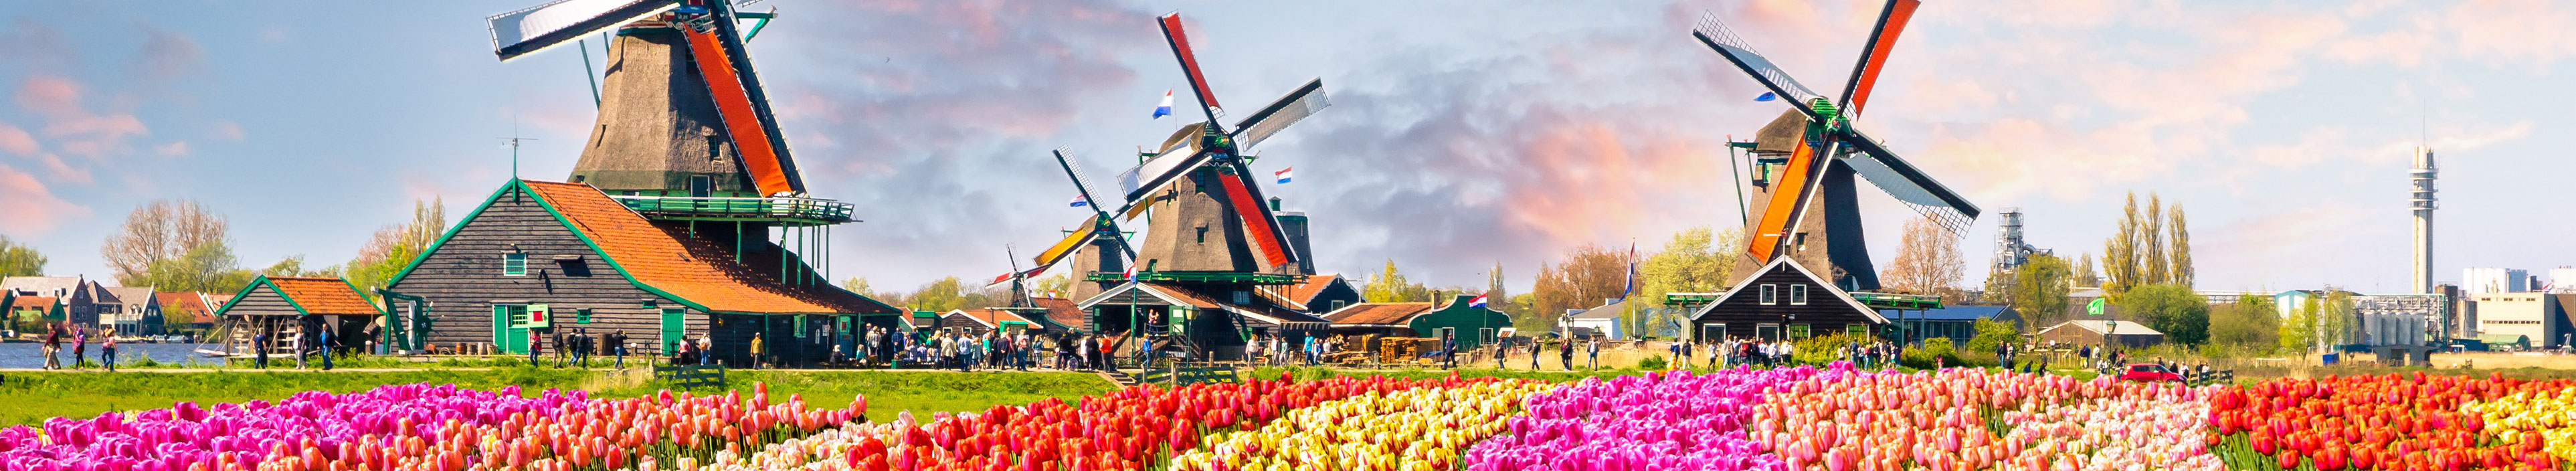 Windräder und Tulpen in den Niederlanden